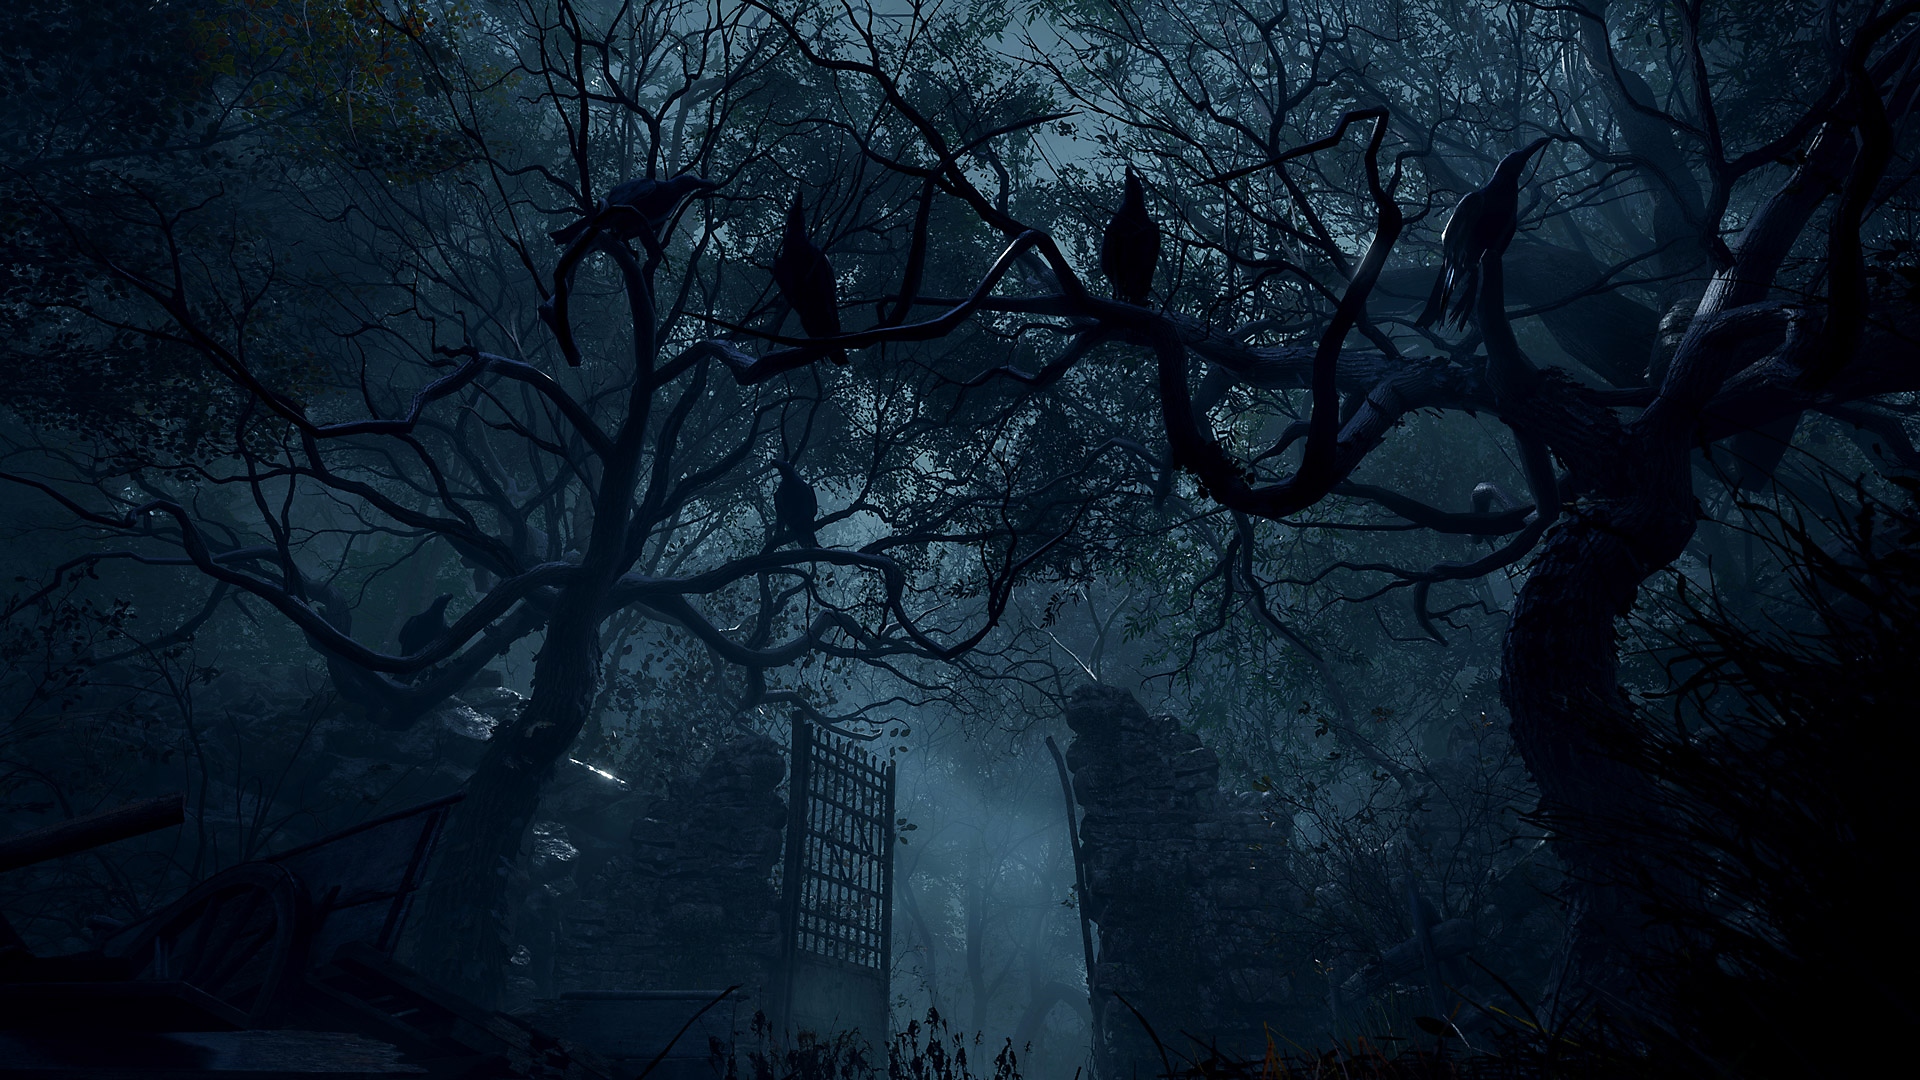 Captura de pantalla de Resident Evil 4 con altas puertas de piedra que se levantan en un área muy boscosa.